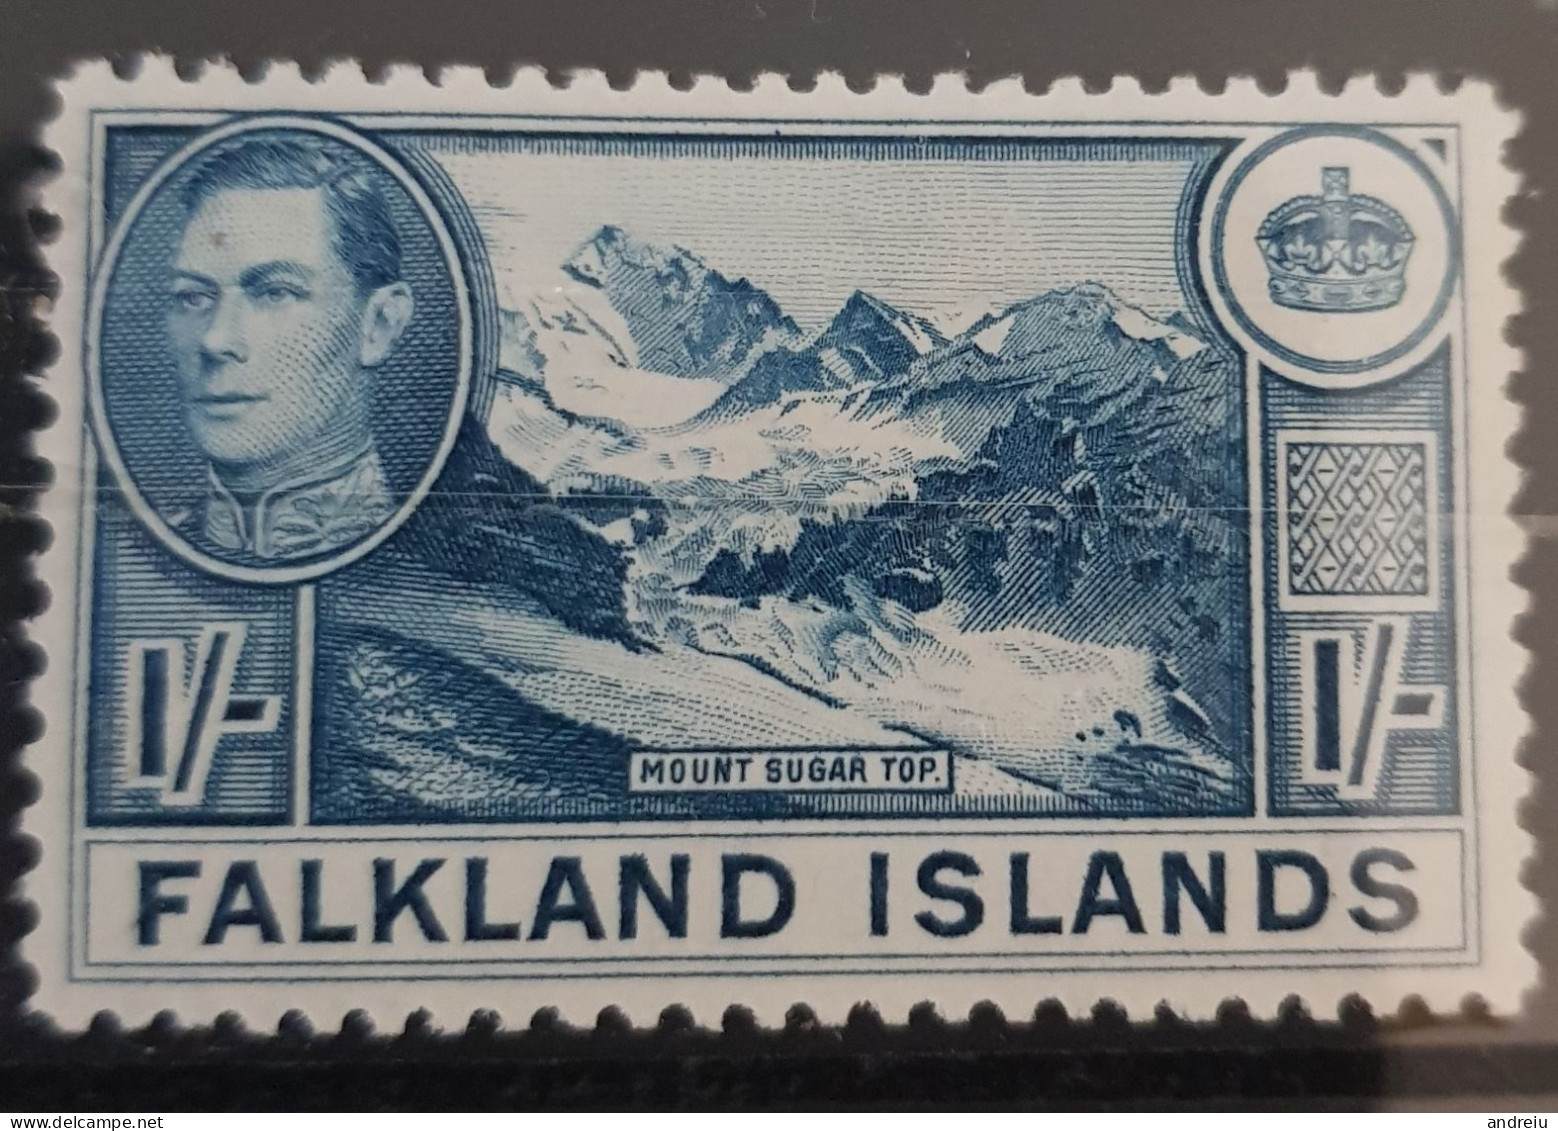 1938 Falkland Islands - 1v., Mount Sugar Top George VI, Geology, Nature, Mountain,glacier, Blue Scott 91, SG 158b - MLH - Berge